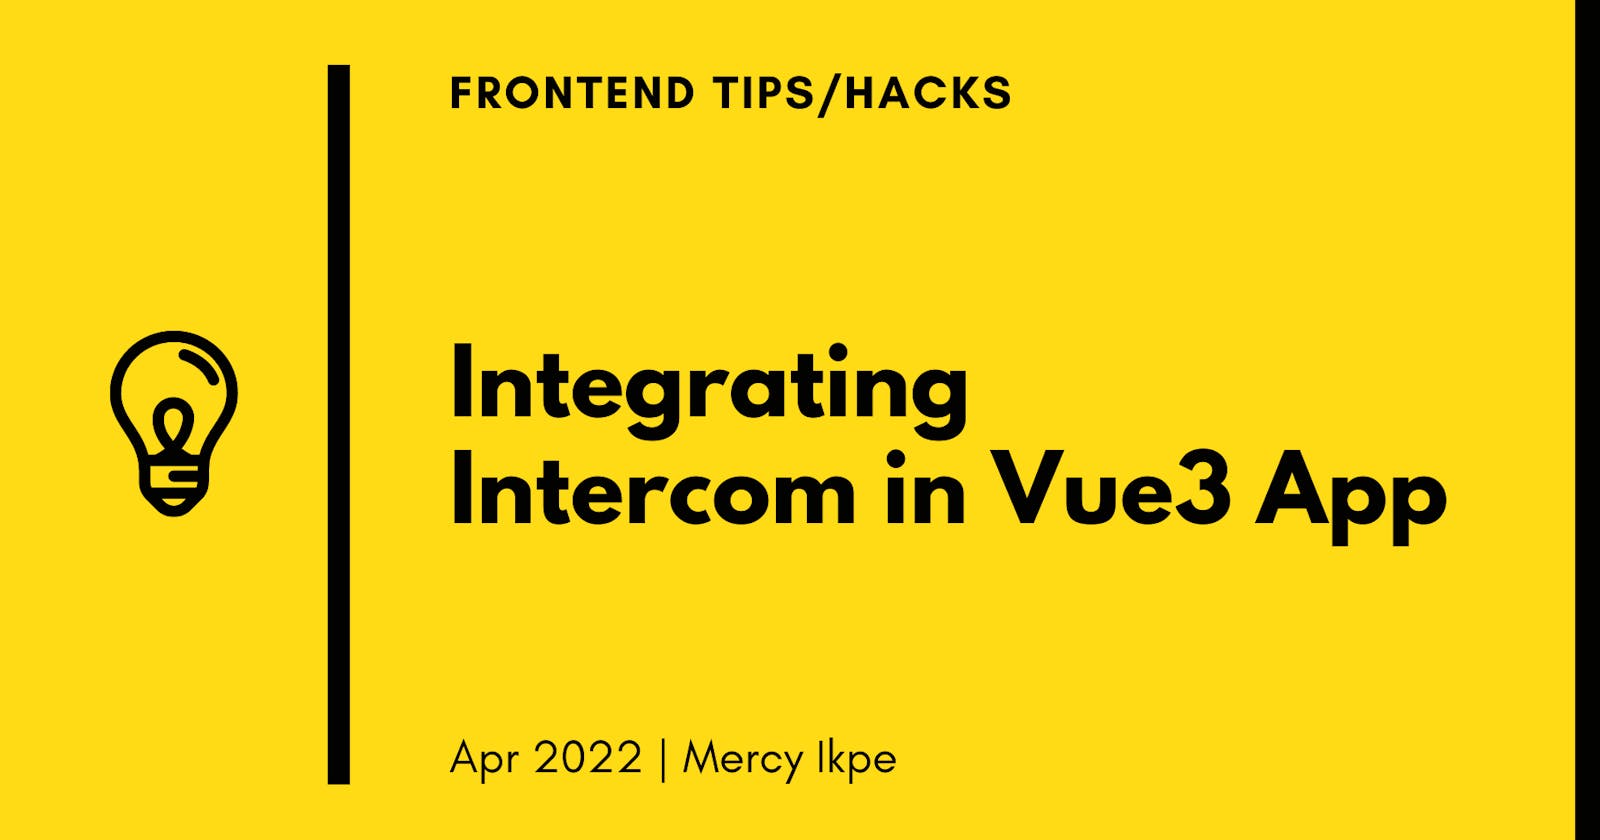 Integrating Intercom in Vue3 app